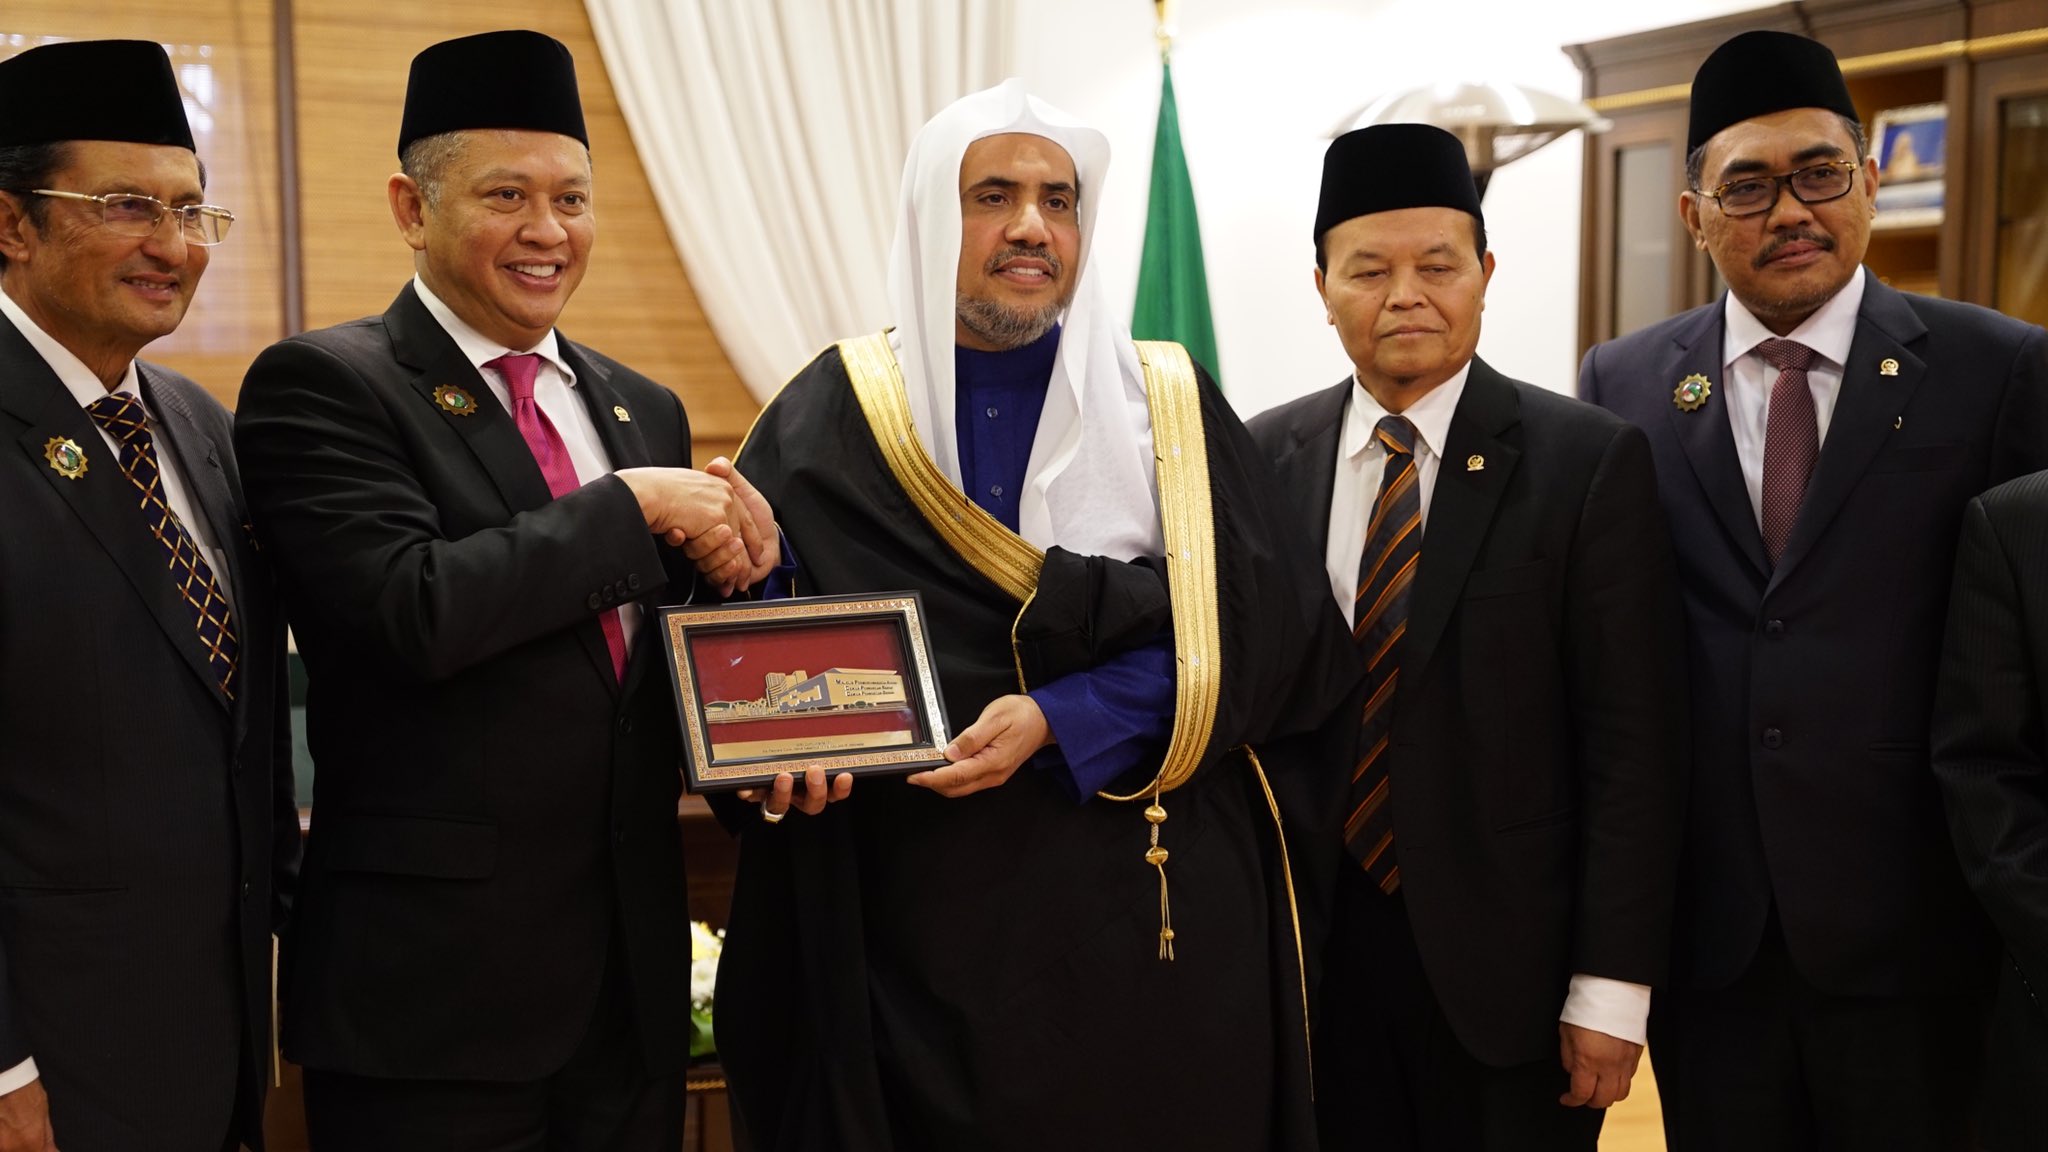 ڈاکٹر محمد العیسی نے انڈونیشیا کے عوامی مشاورتی اسمبلی کے صدر کا استقبال کیا